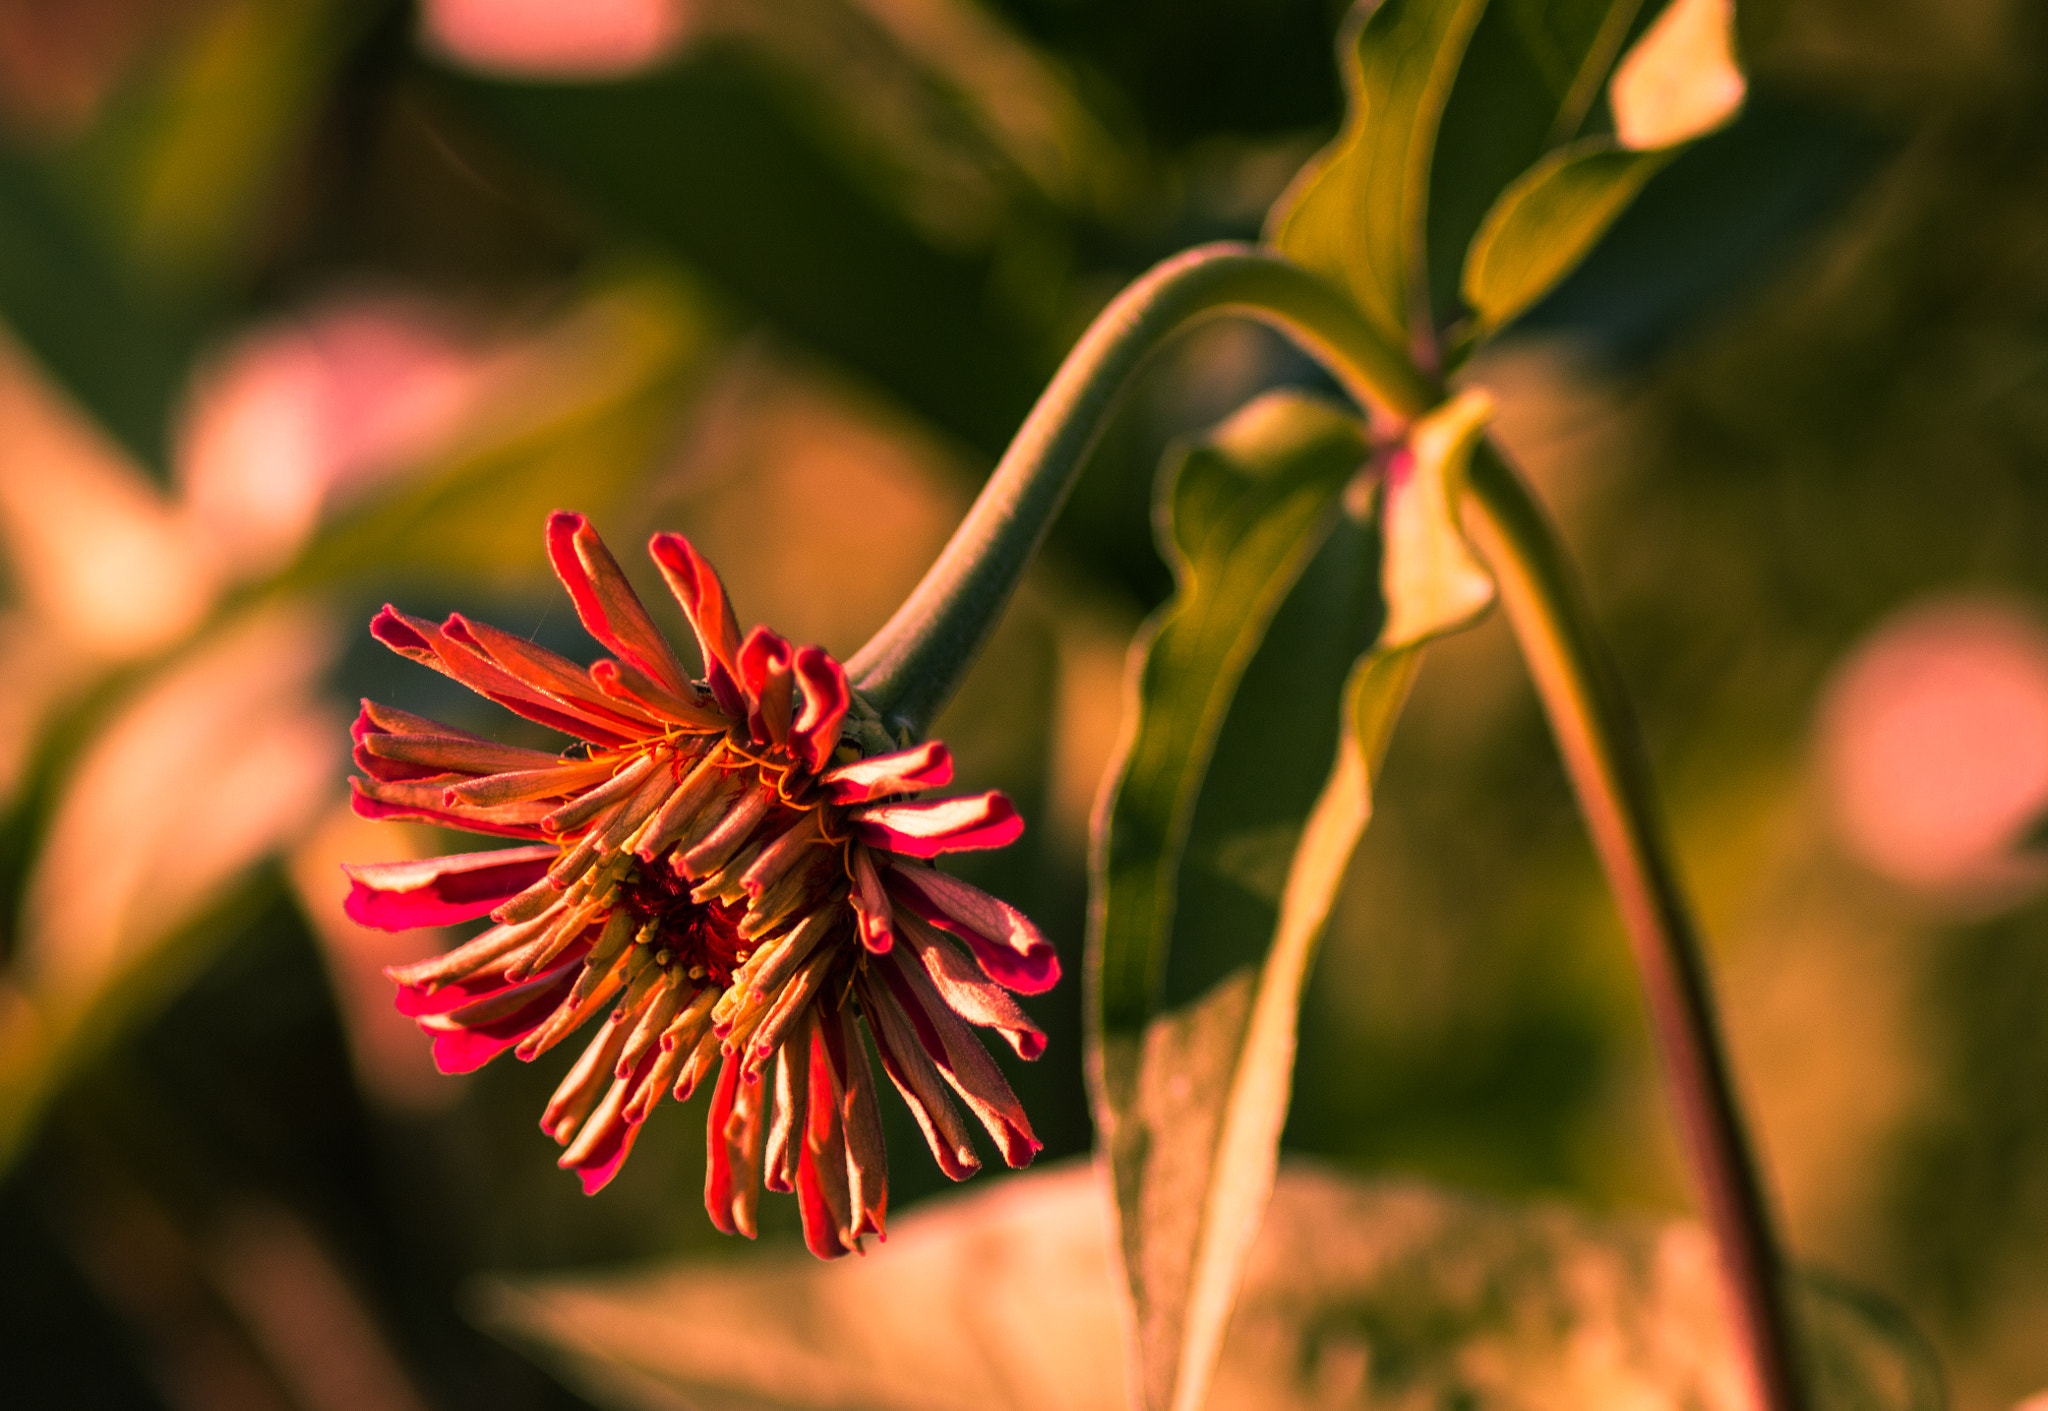 Canon EOS 70D sample photo. Garden flower photography